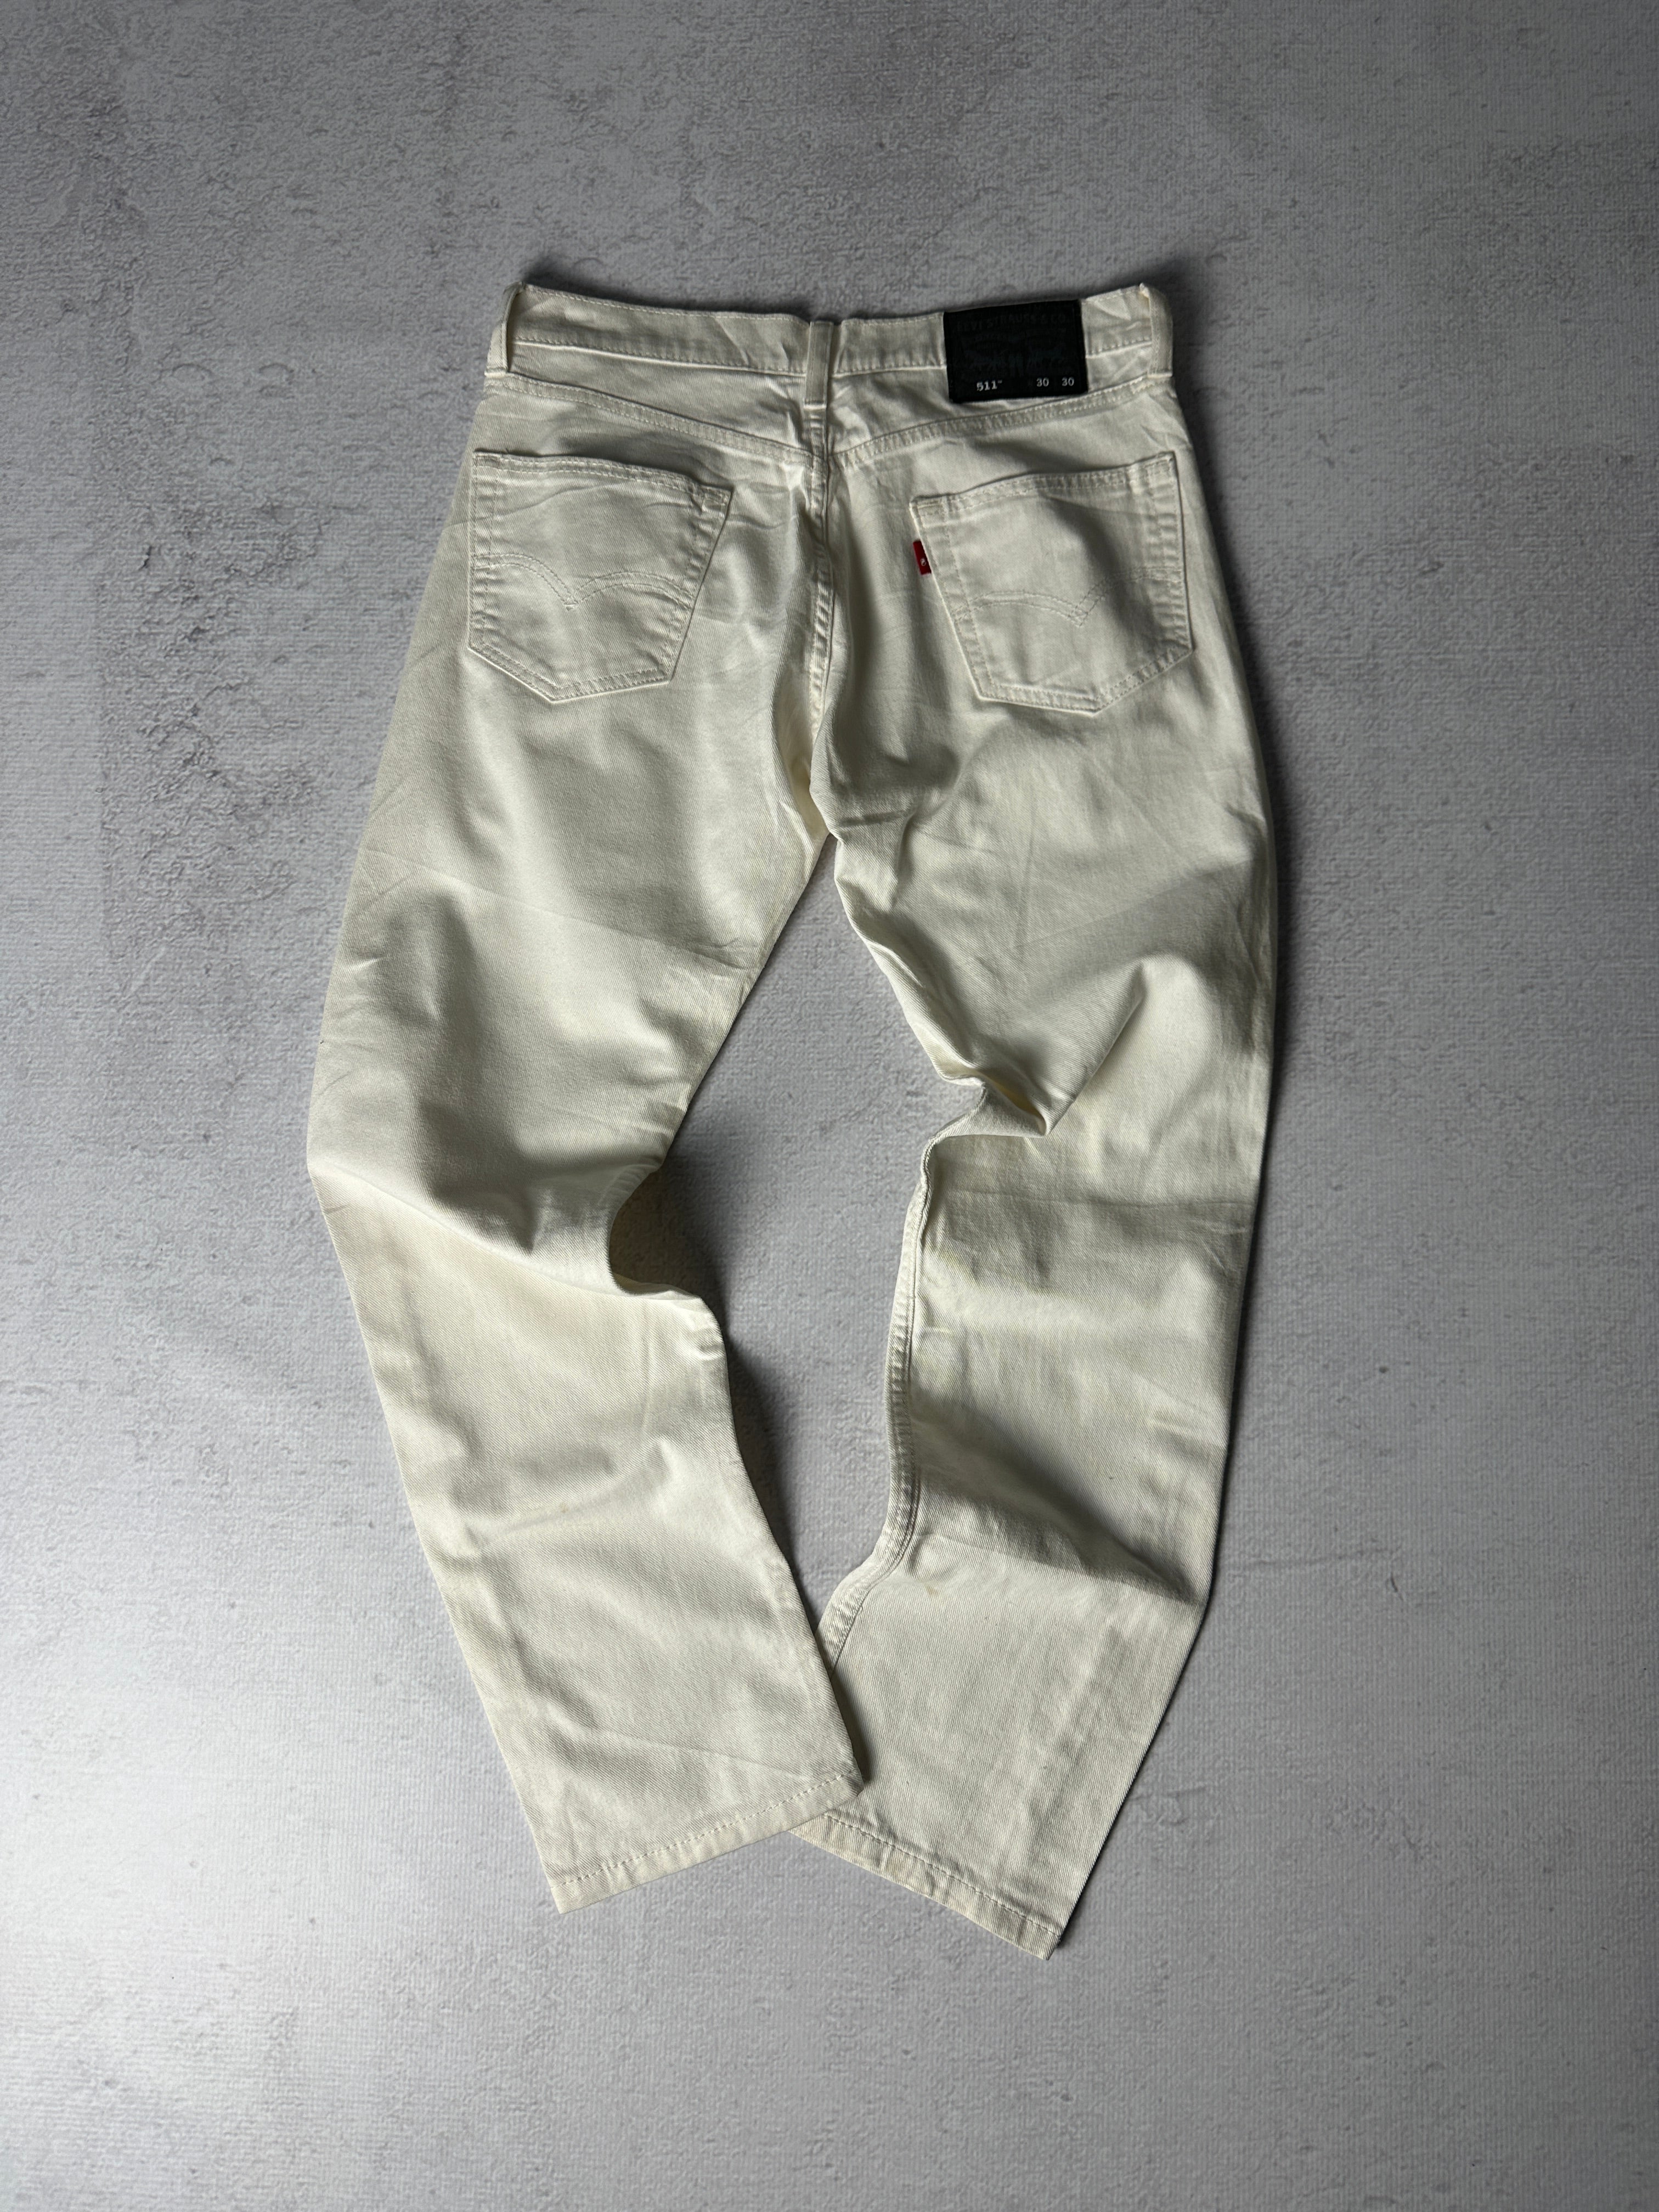 Vintage Levis 511 Jeans - Men's 32W30L